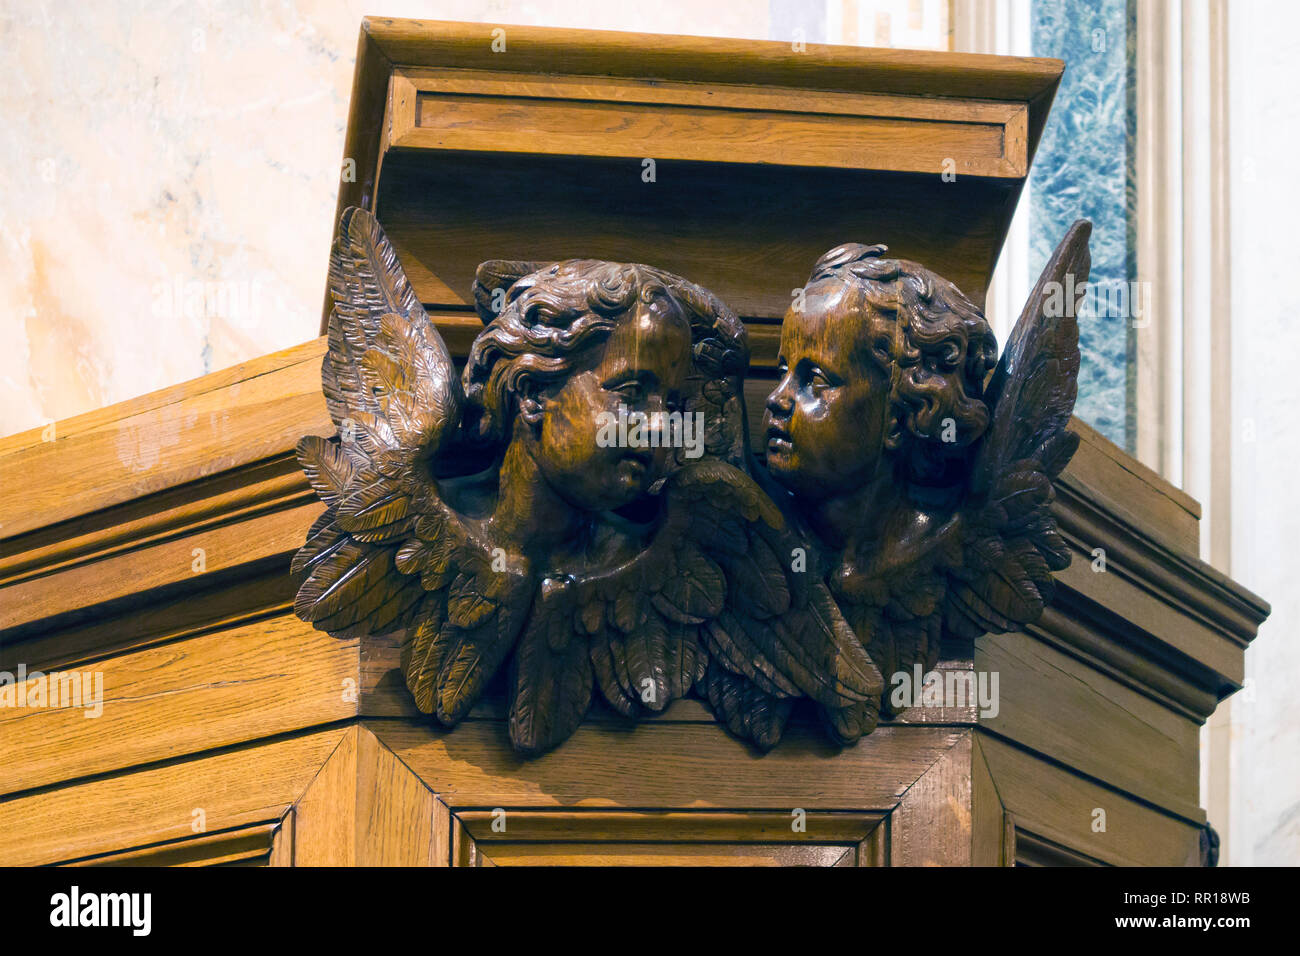 Mobilier décoration murale, deux petits anges en bois mignon sur l'ancienne église en bois cathedra Banque D'Images